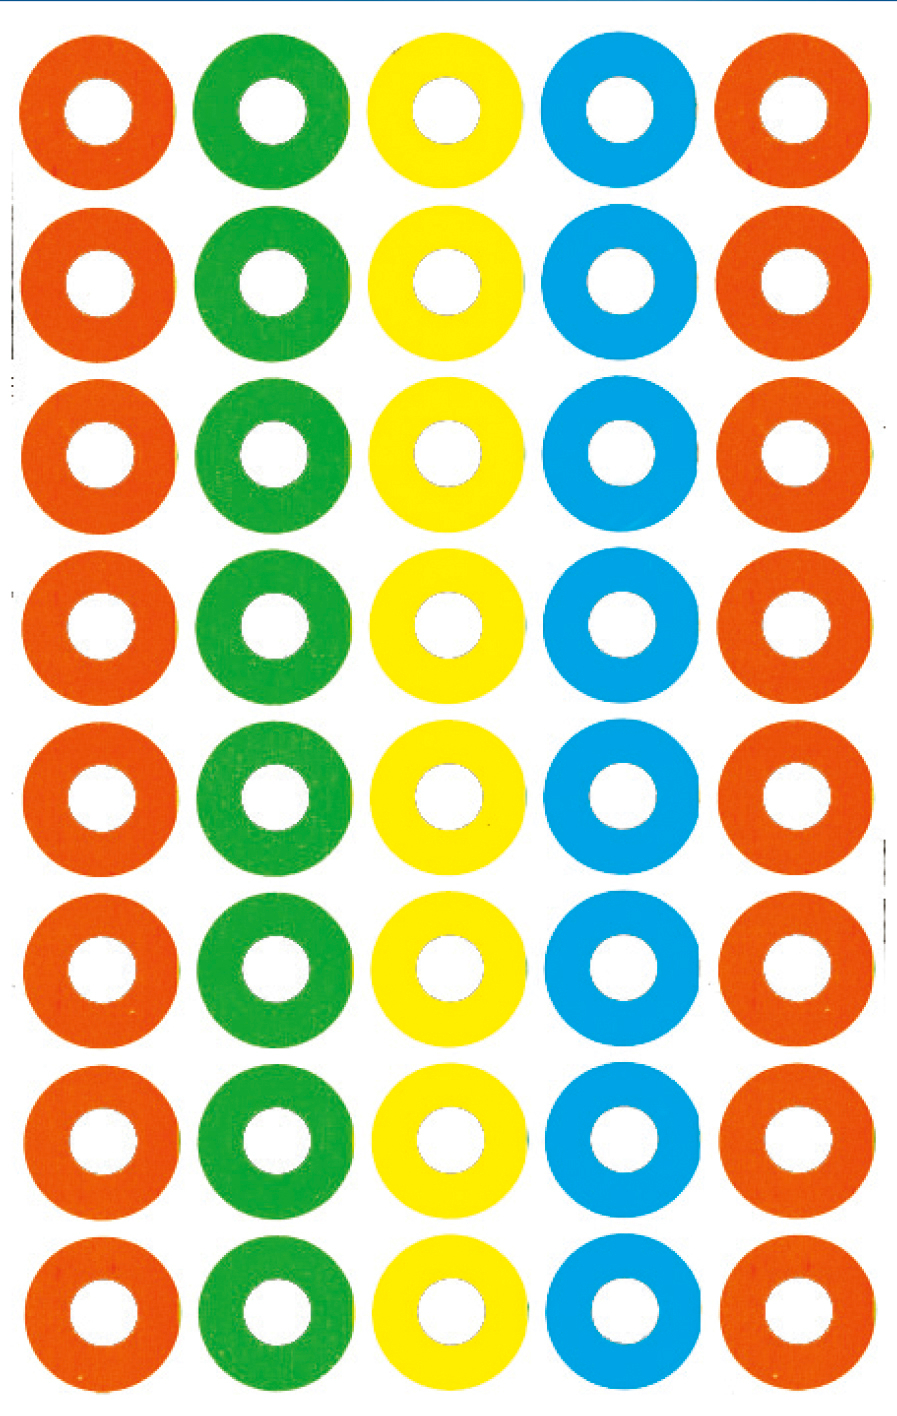 AVERY ZWECKFORM Sticker ongle 8.4x16cm 3055Z coloré 4 flls., 160 psc.